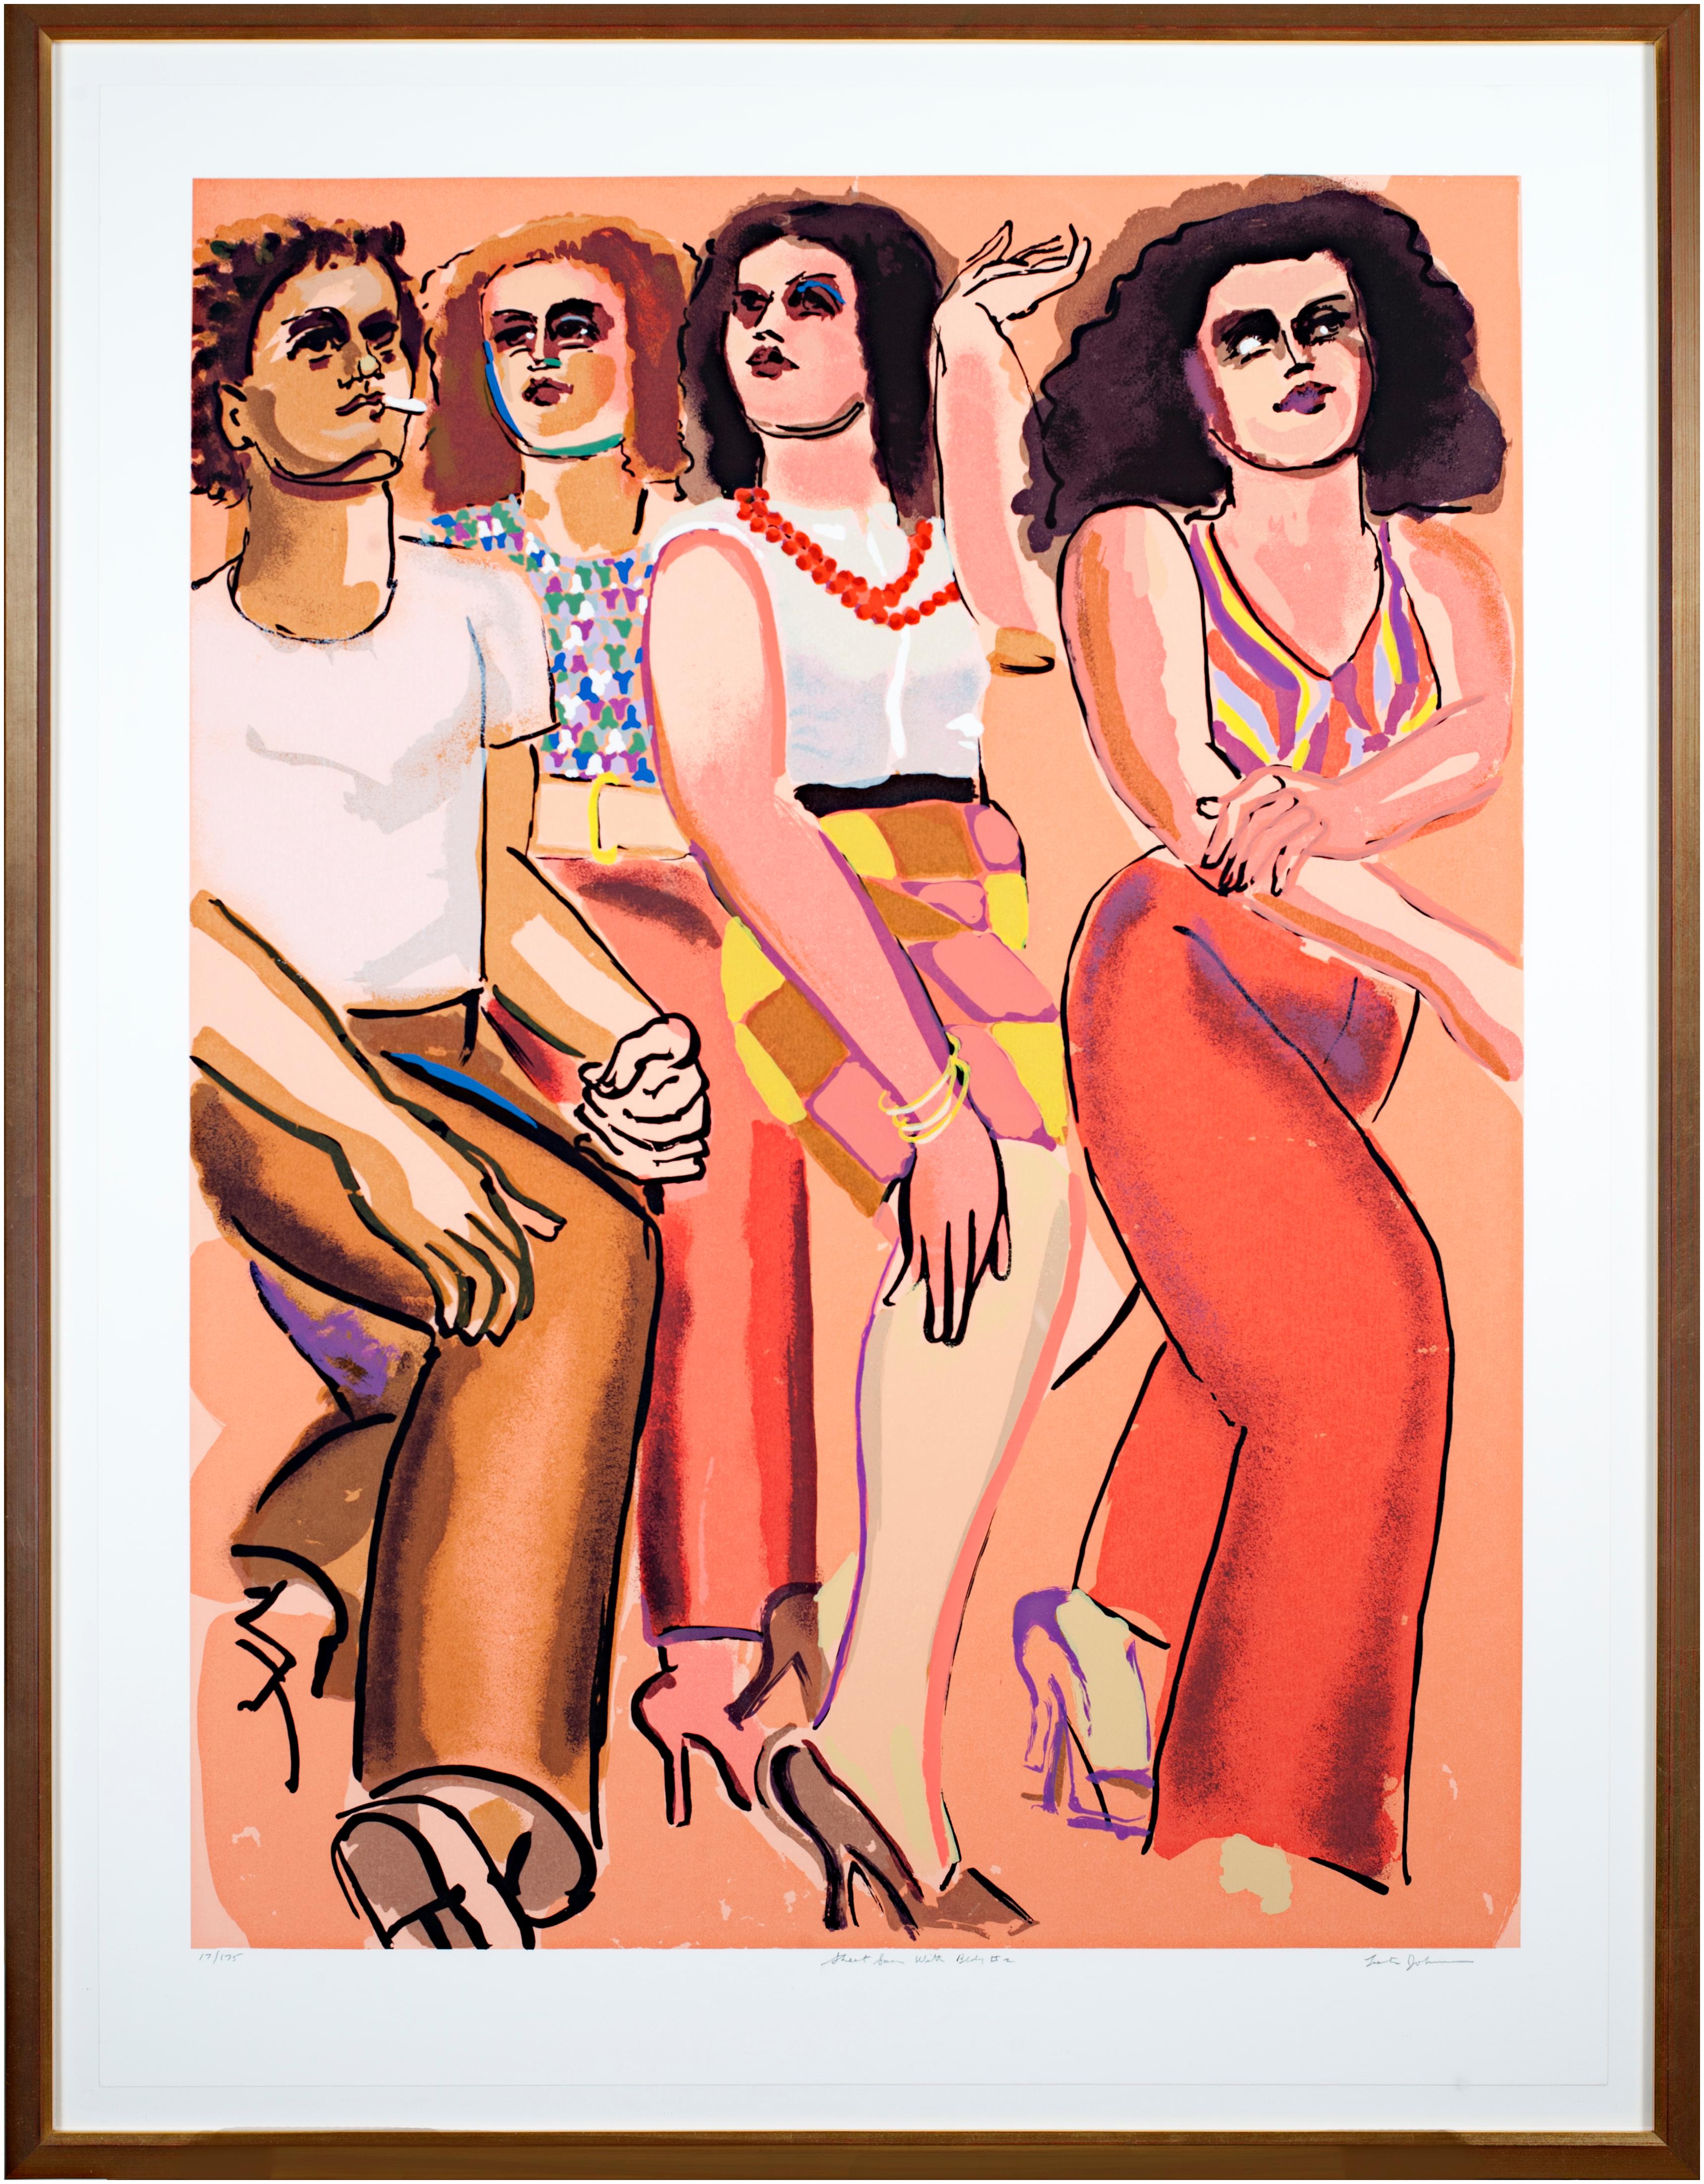 La présente œuvre est une sérigraphie originale signée par Lester Johnson, tirée de son "Street Scene Portfolio". Elle représente quatre personnages, tous vêtus d'habits de ville à la mode, emblématiques de la culture et de la vie des jeunes.